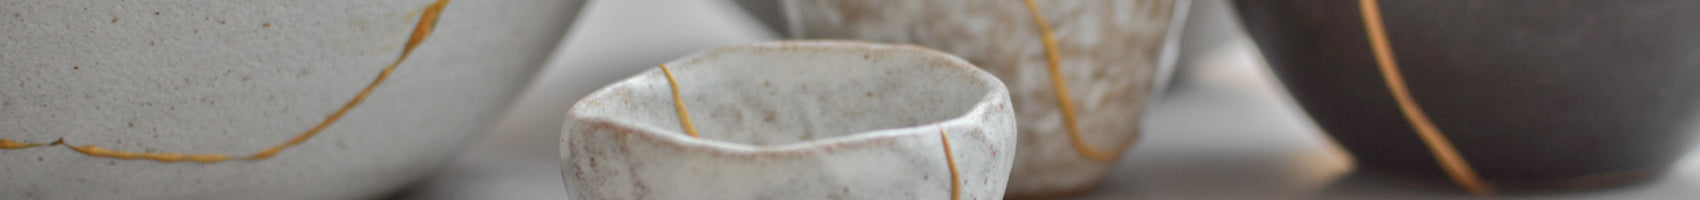 How to repair broken ceramic with kintsugi - Bunnings New Zealand